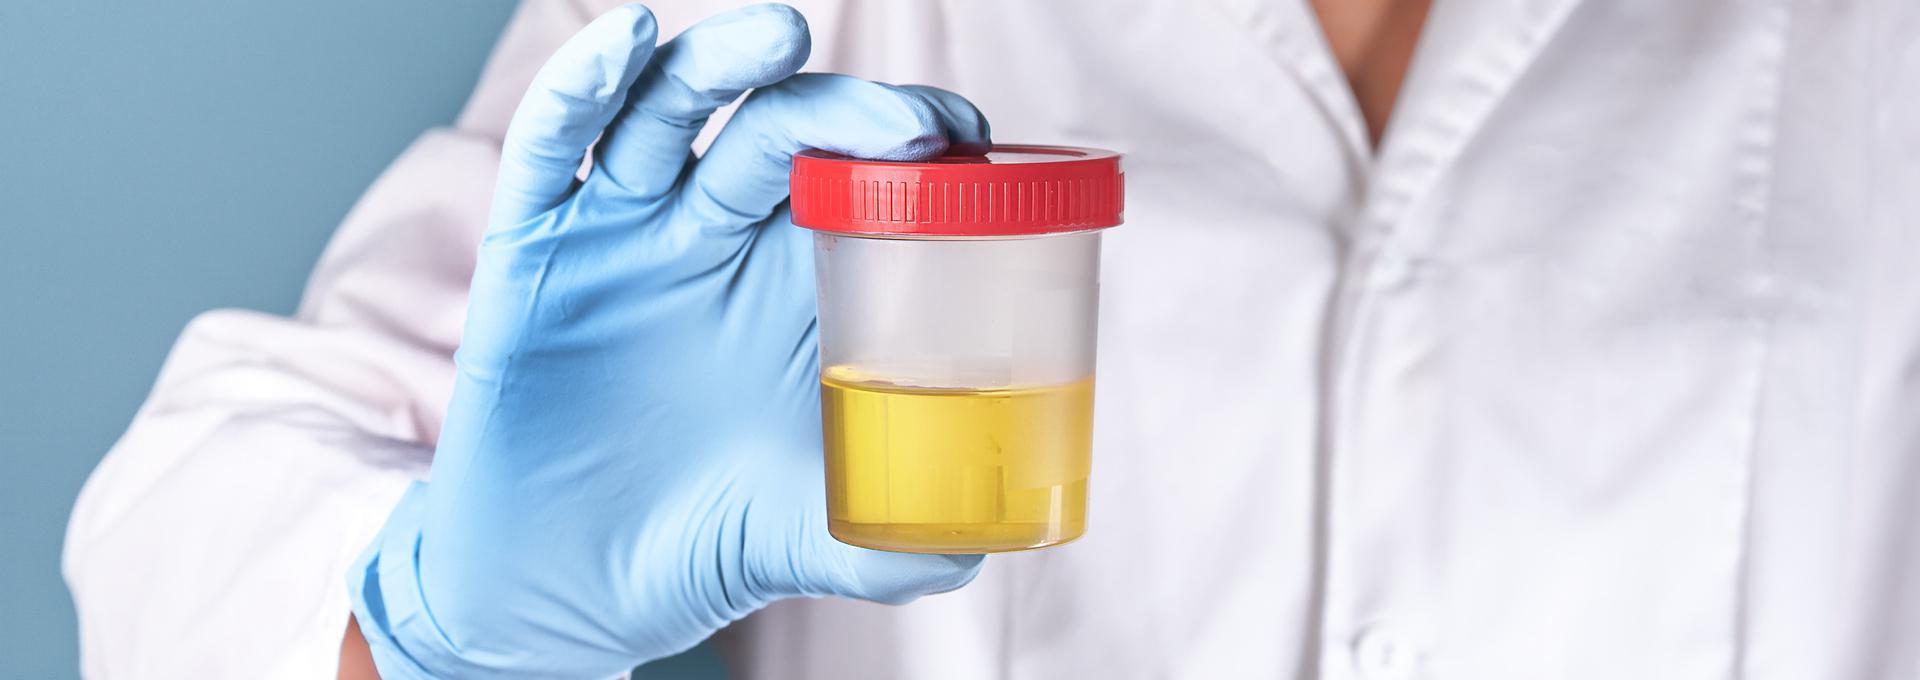 7 Panel Urine Drug Tests - info-hero